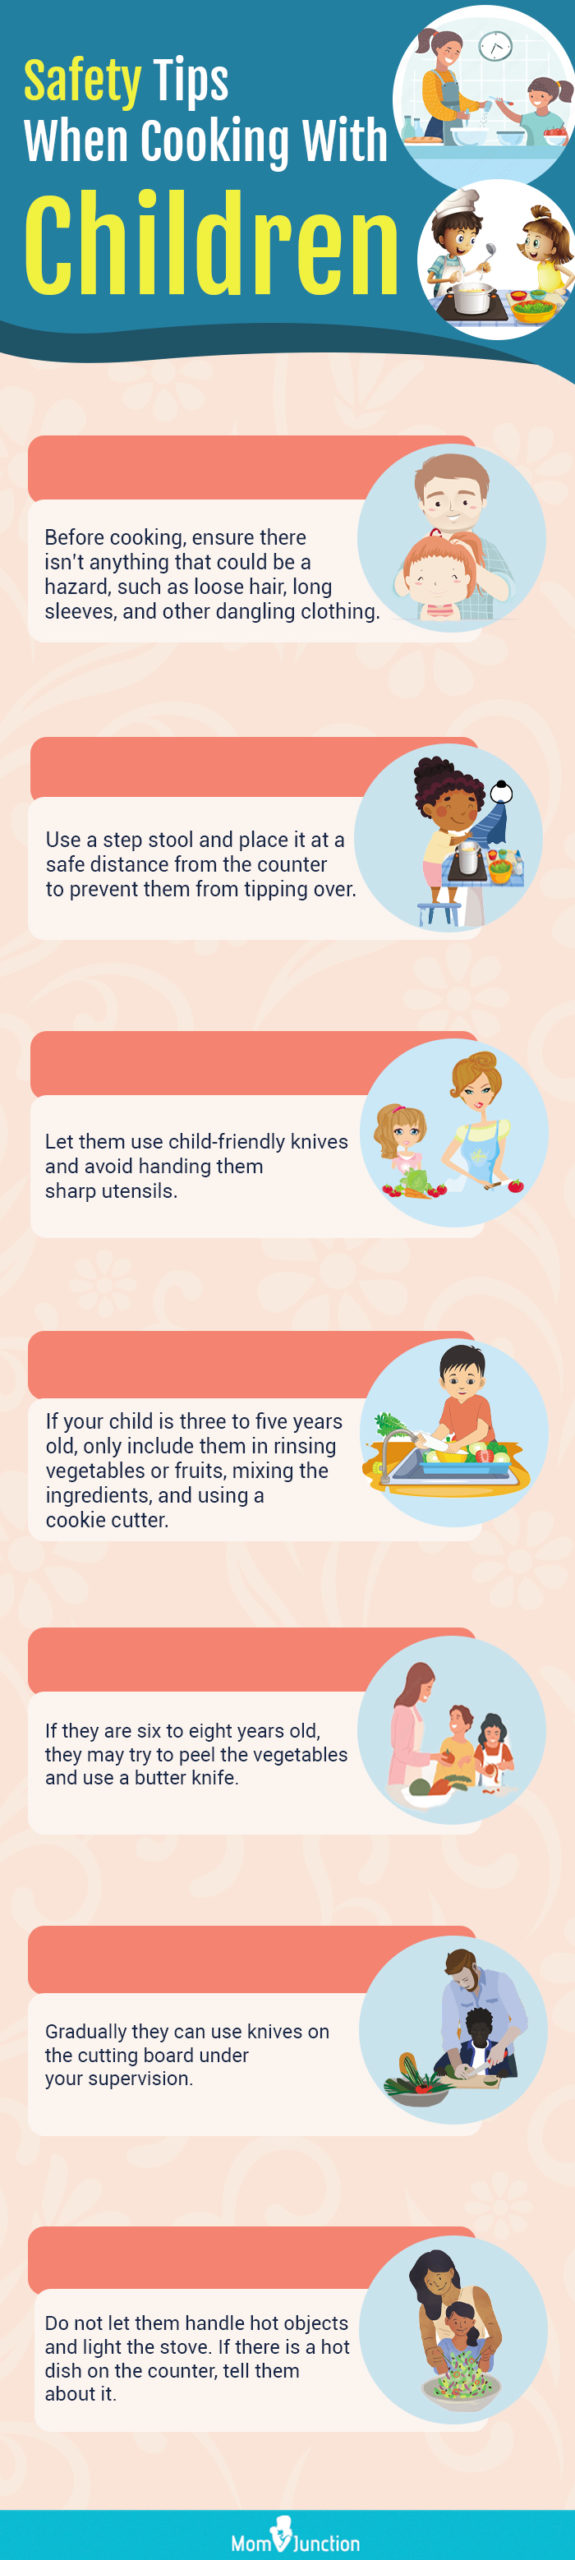 与儿童一起烹饪的安全提示(信息图)